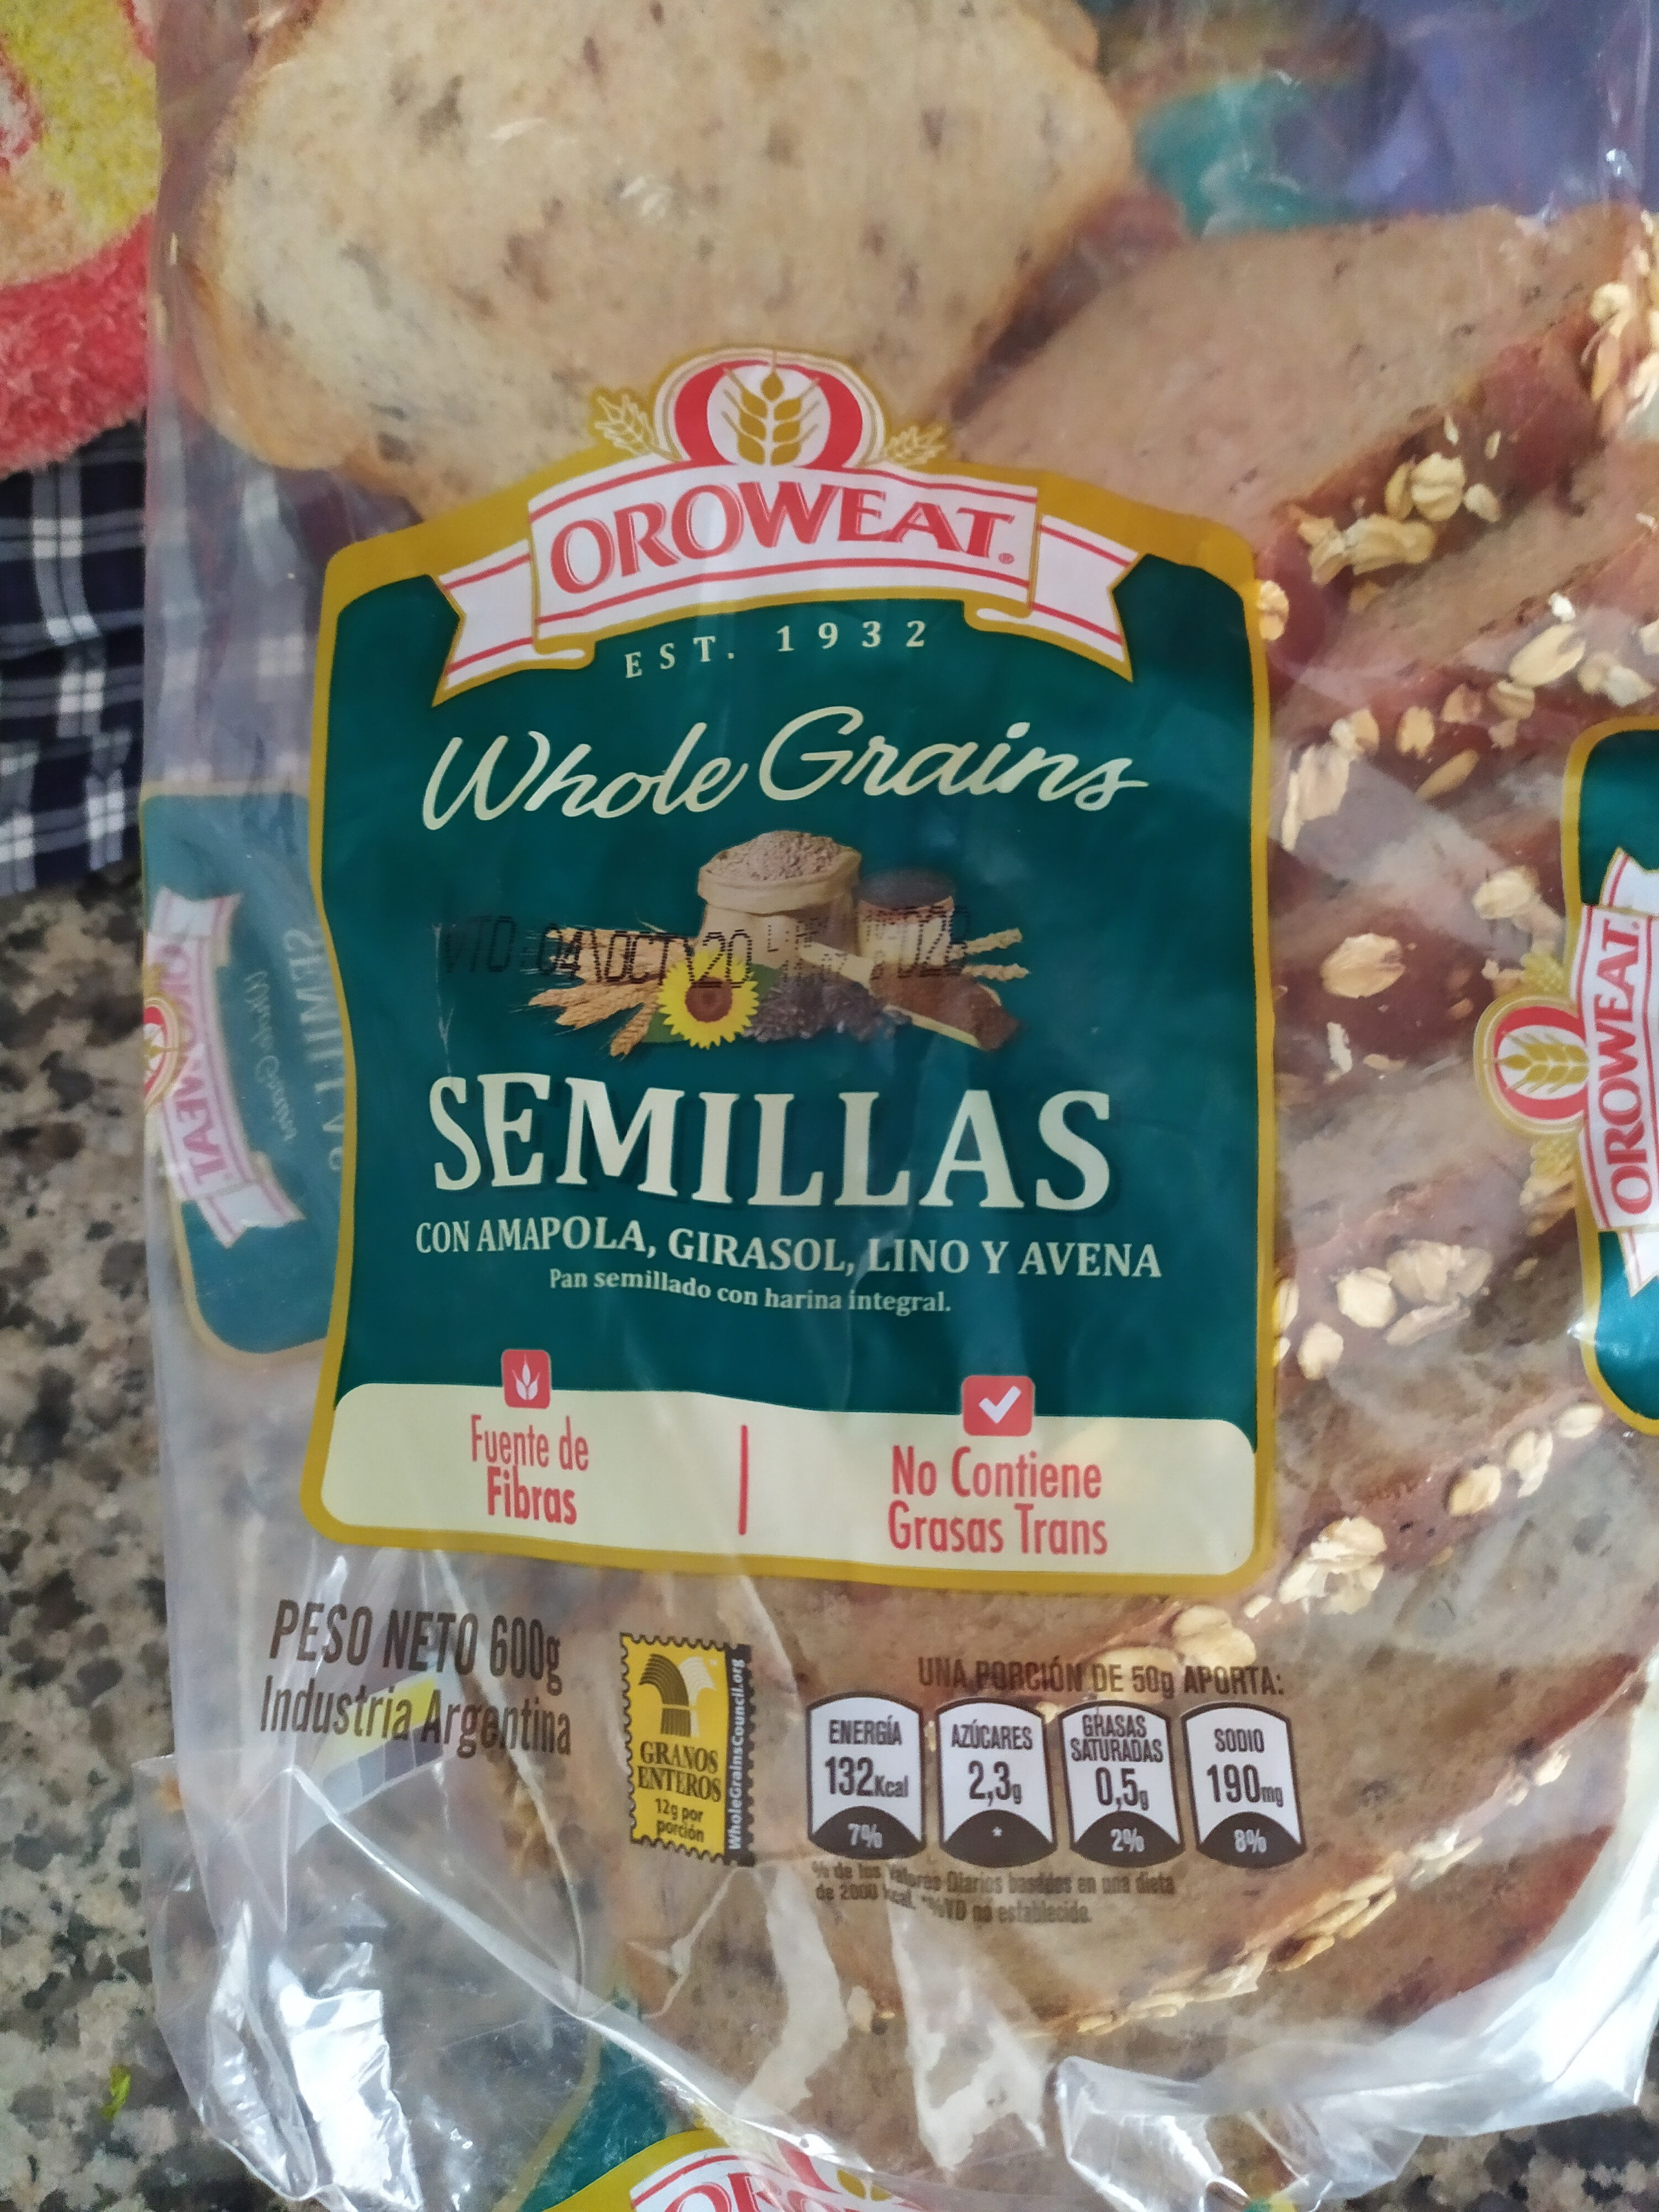 Whole Grains Semillas con Amapola, Girasol, Lino y Avena - Produkt - es